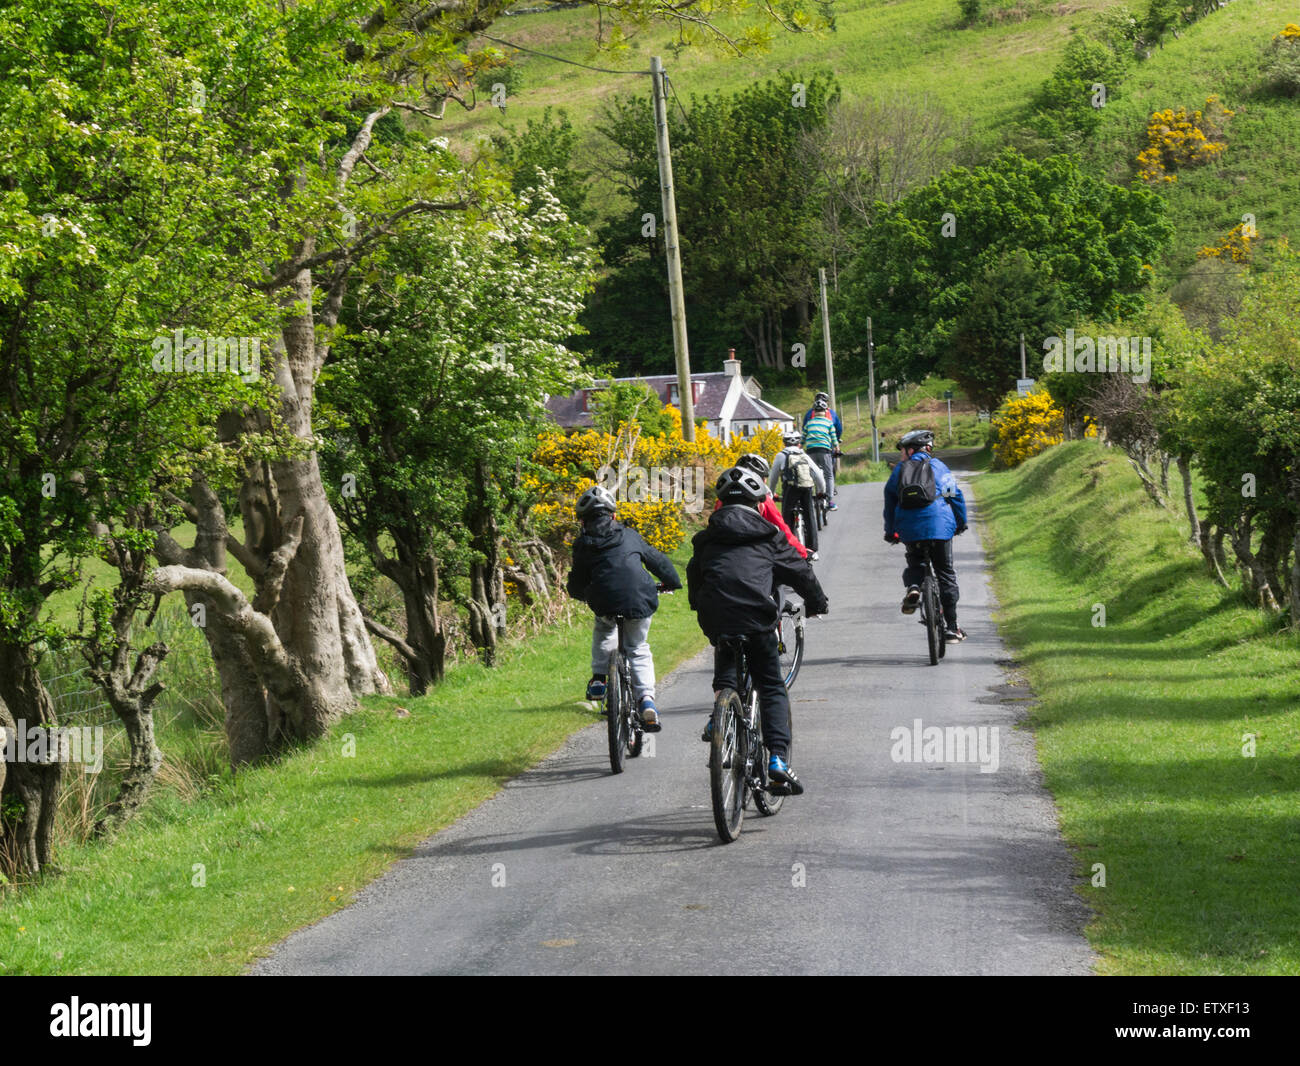 Gruppe von Schulkindern auf Rad-Aktivurlaub Lochranza Isle of Arran Schottland, eines der schönsten und dramatischen Inseln in Europa Stockfoto